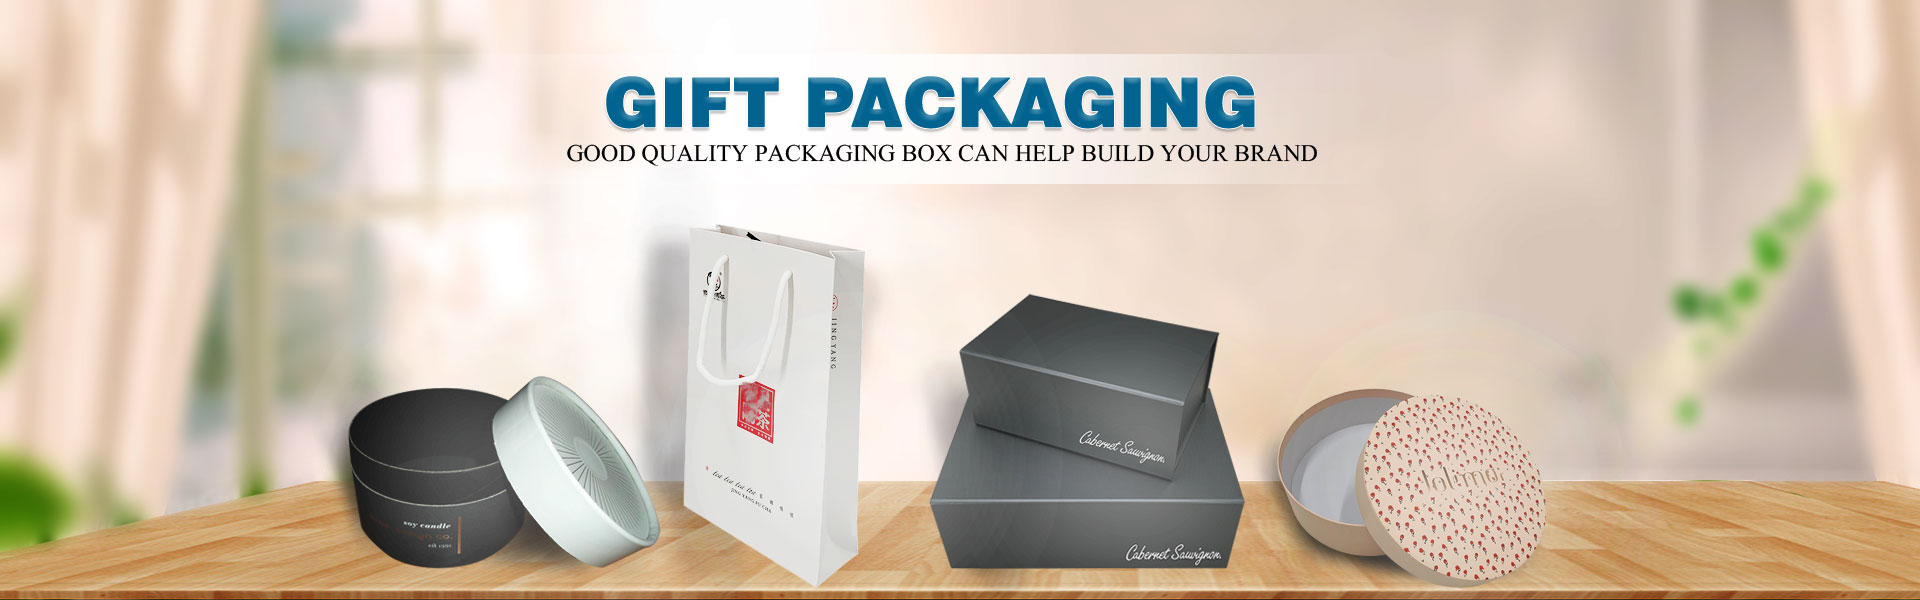 Papírdoboz, ajándékdoboz, tortásdoboz,Dongguan Yisheng Packaging Co., Ltd